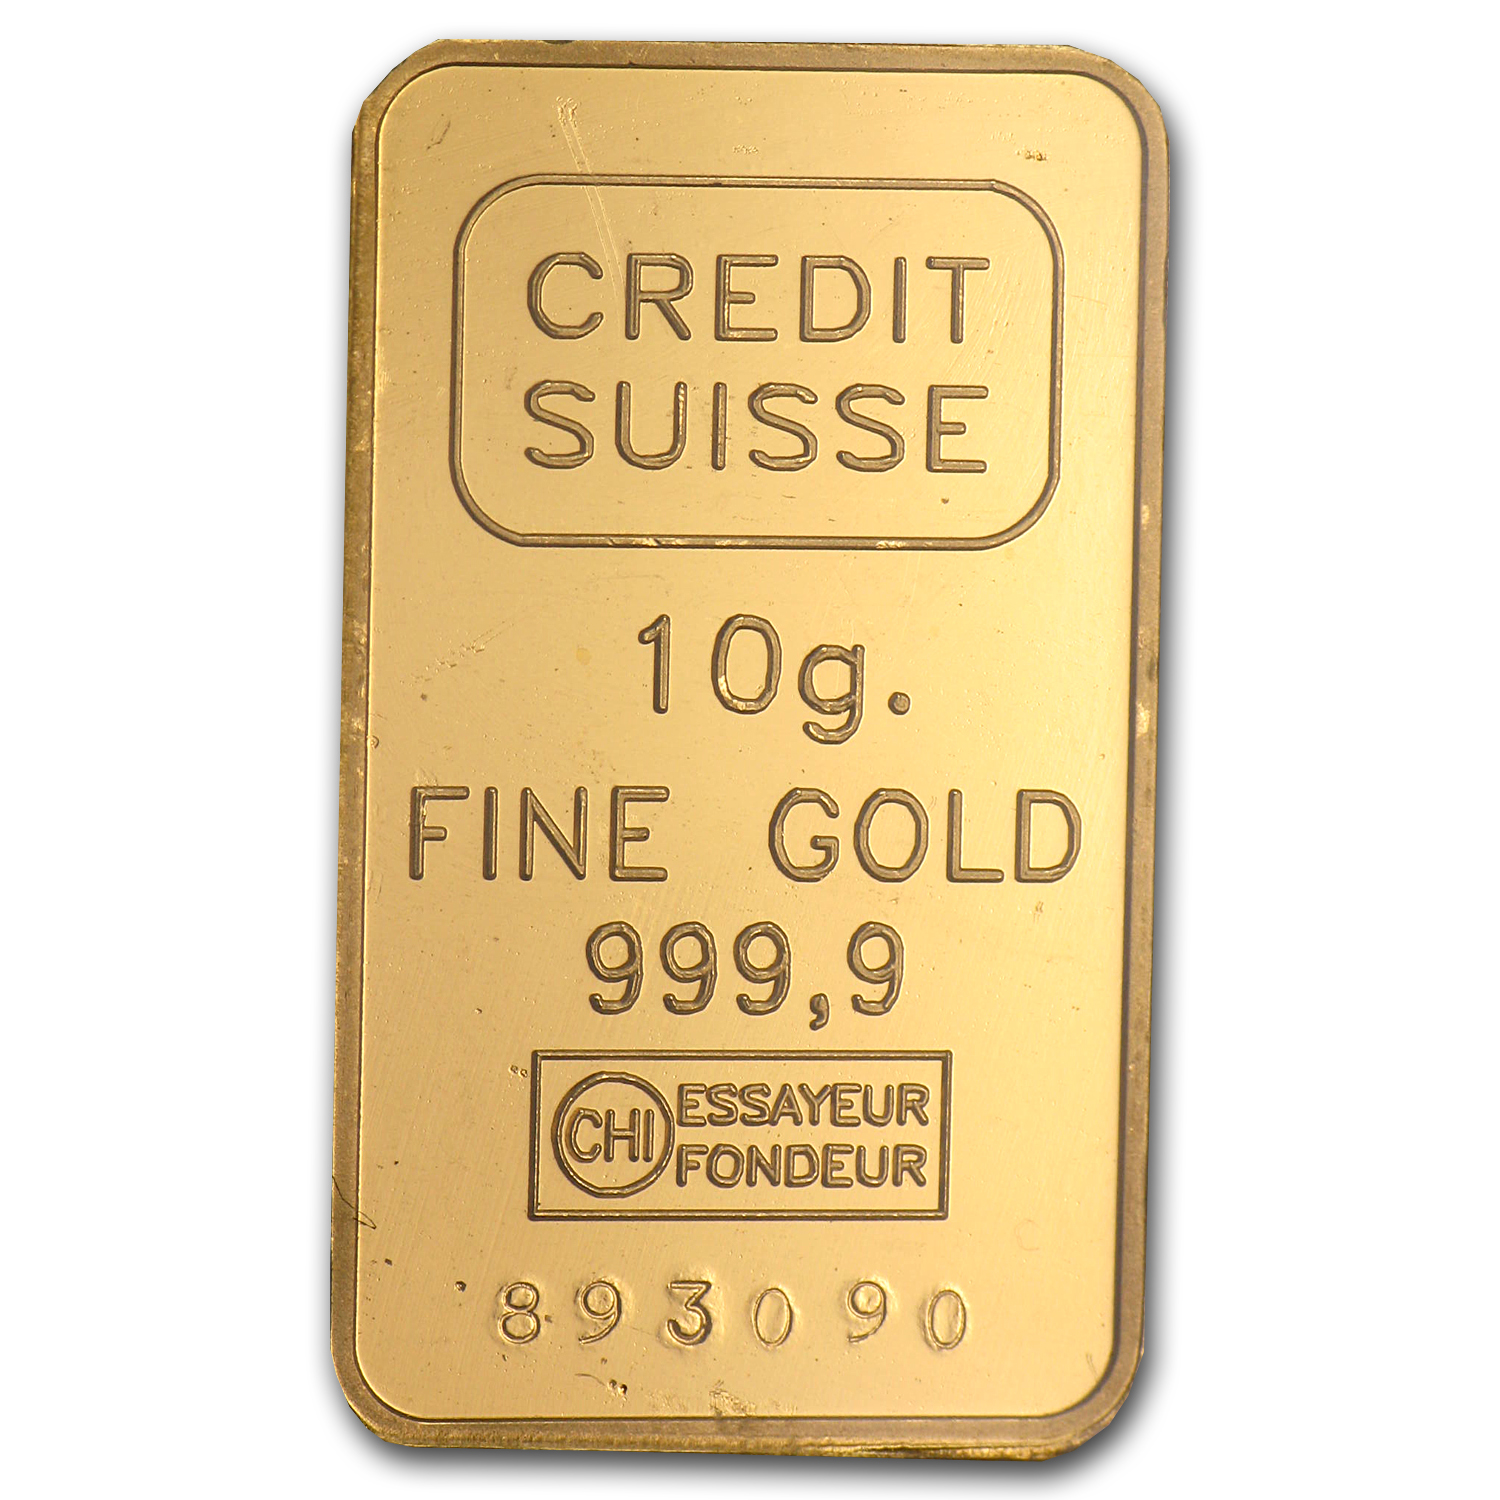 10 g credit suisse gold bar